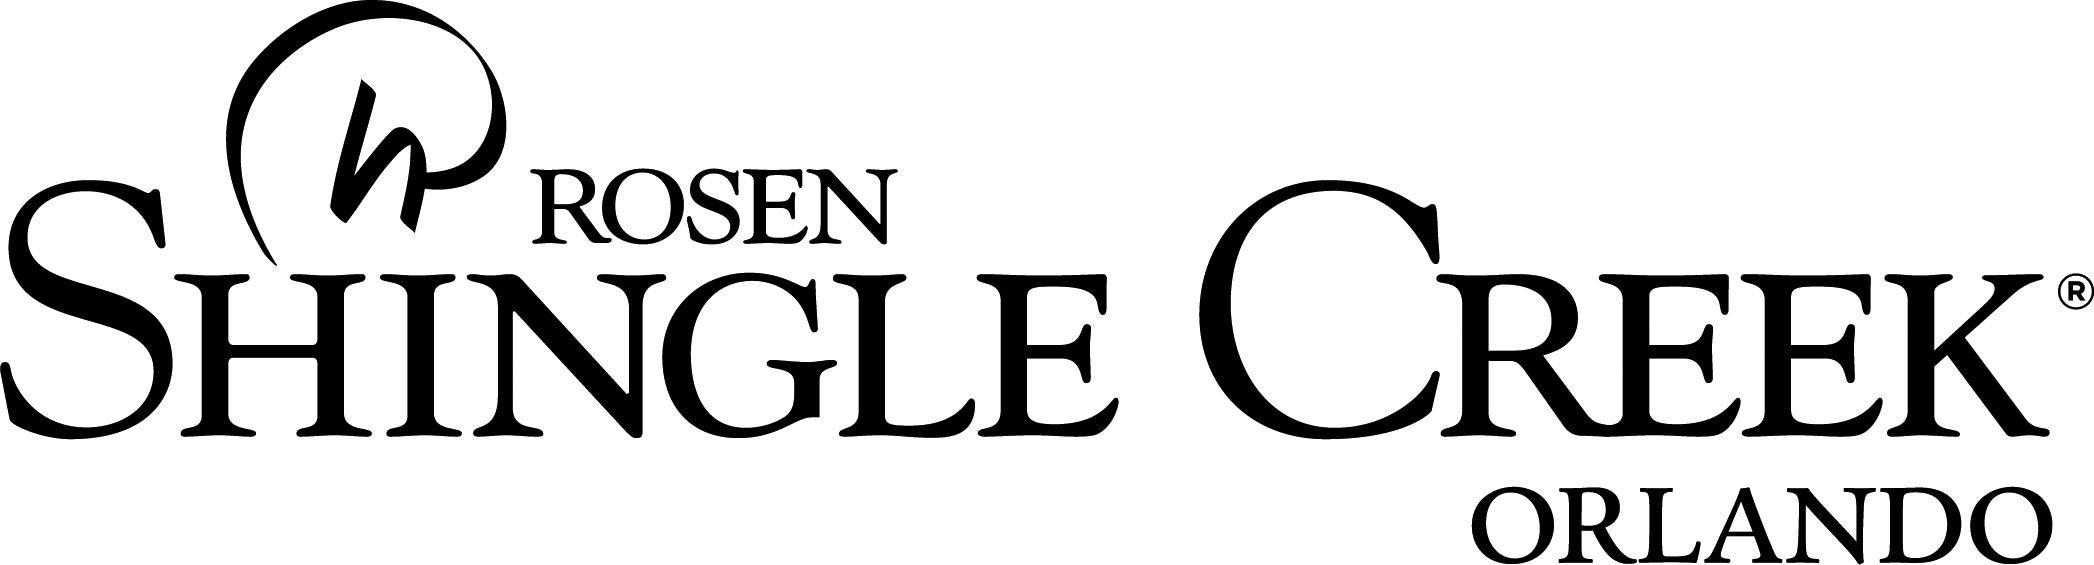 Creek Logo - Logos | Rosen Shingle Creek®